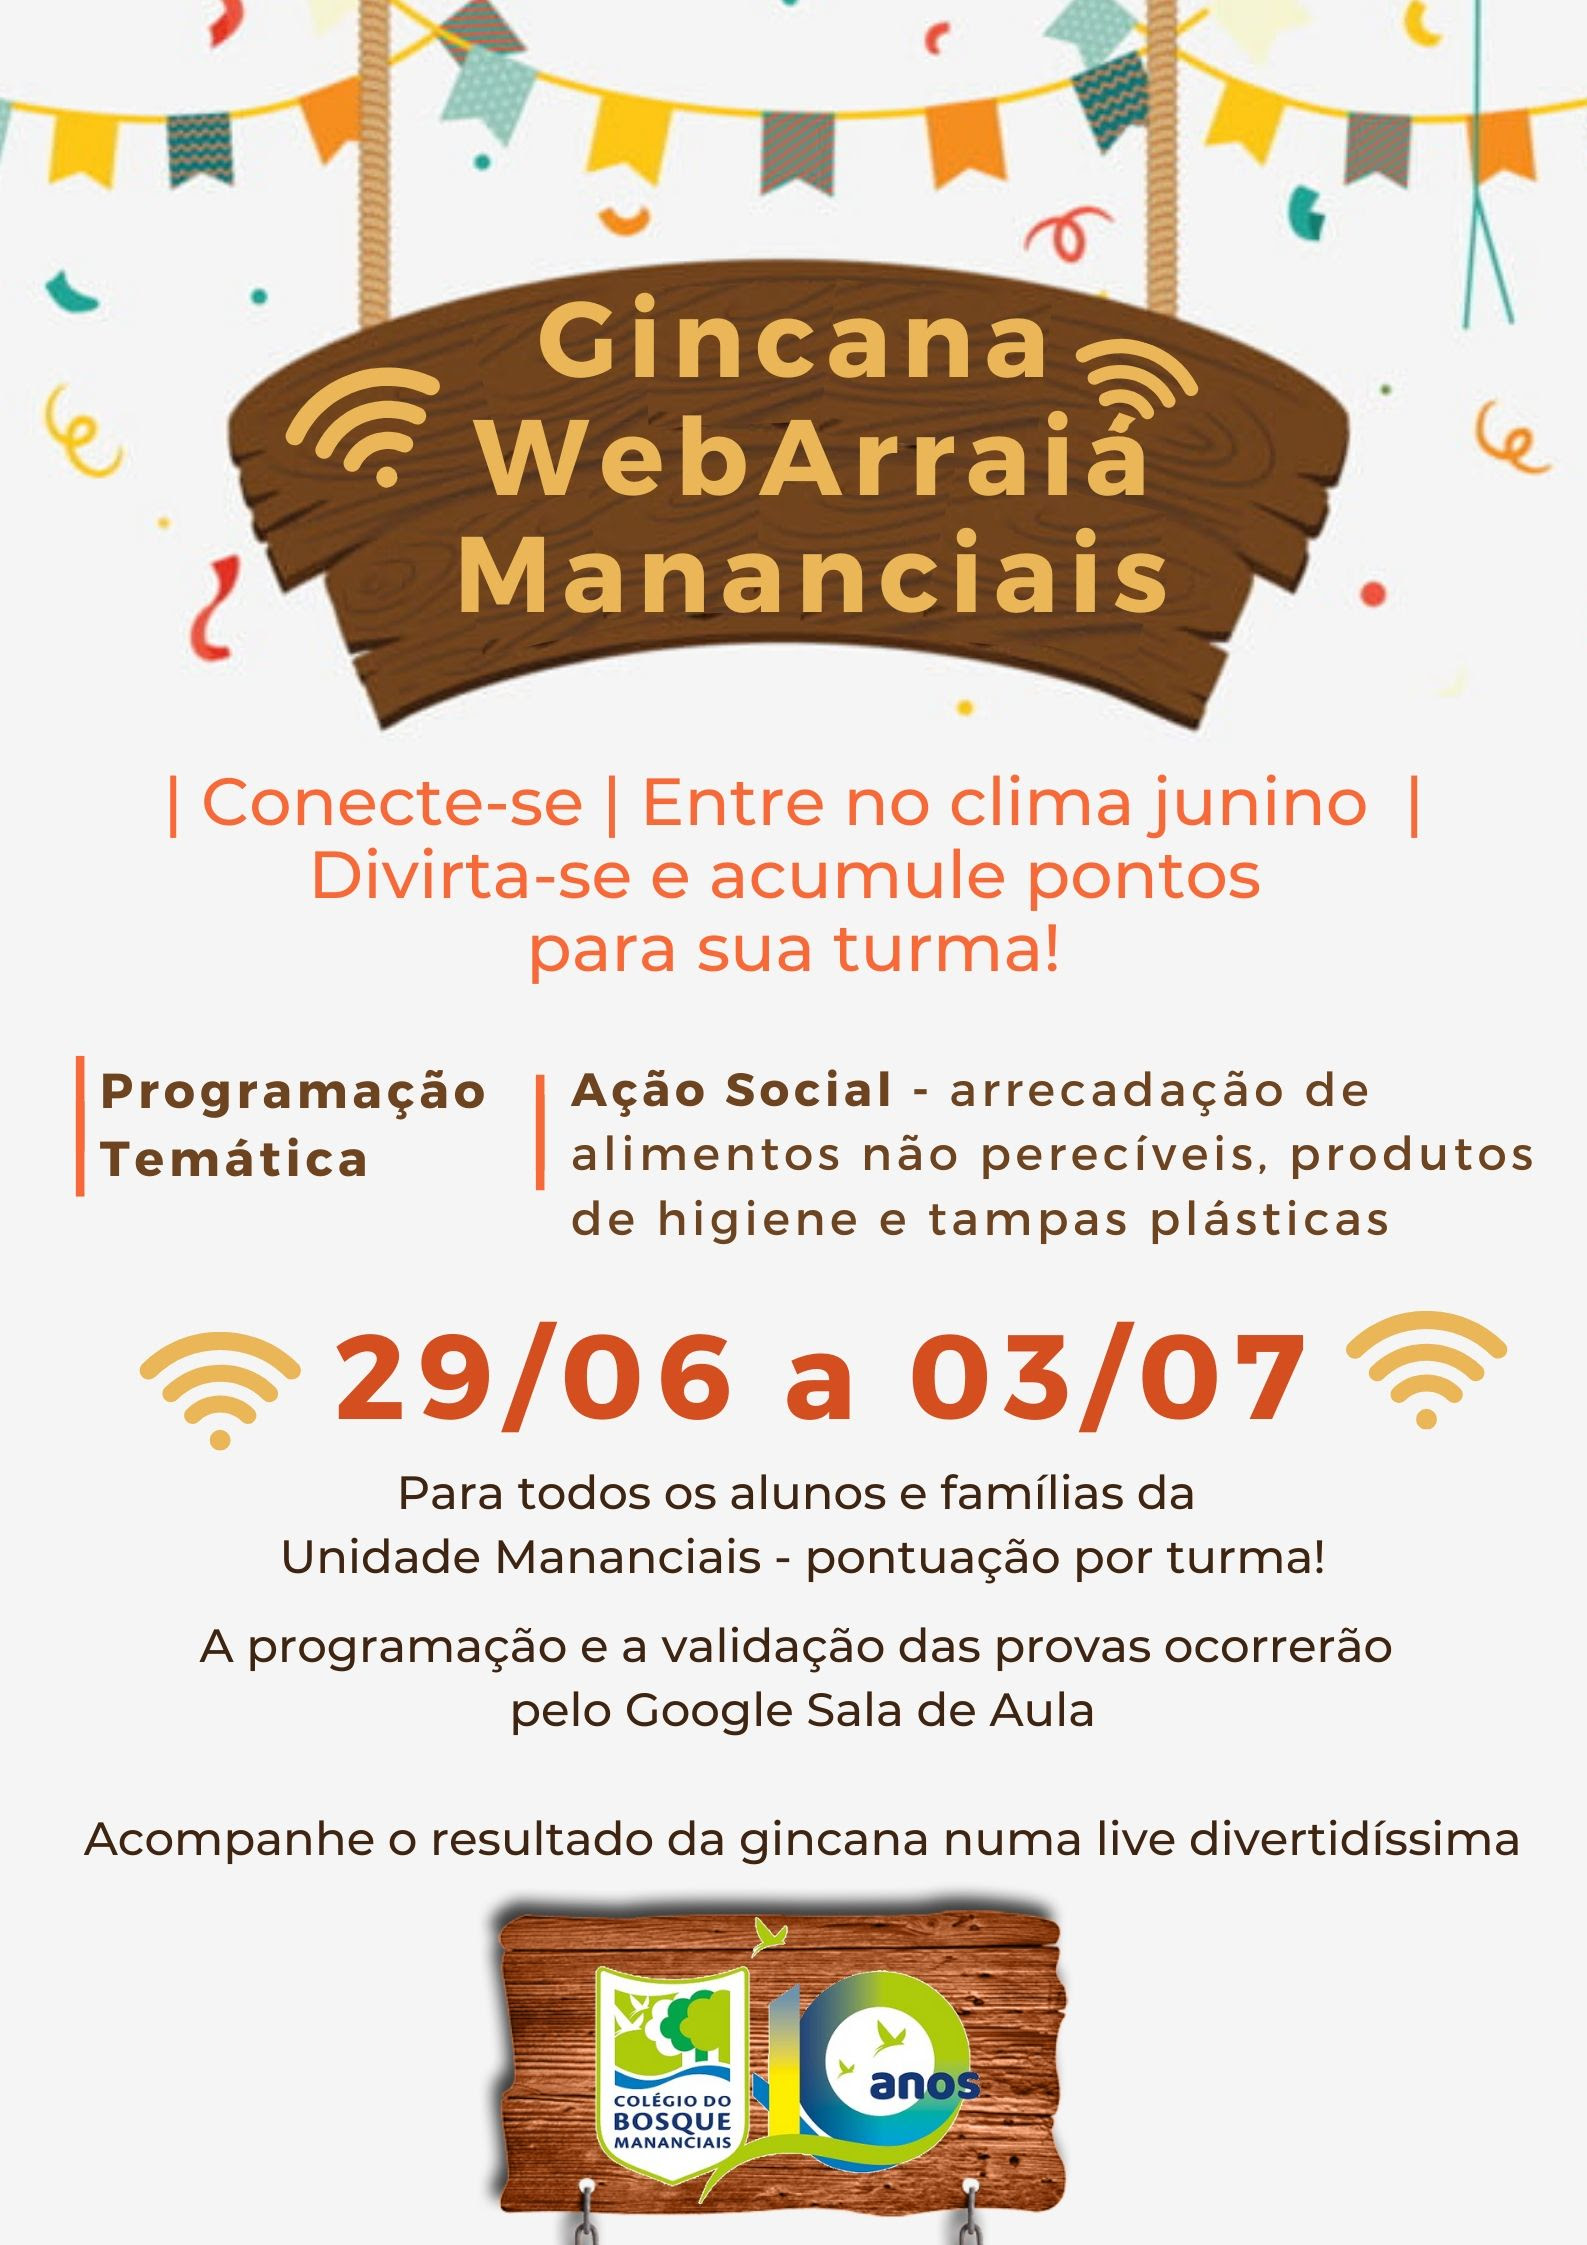 Web Arraiá Mananciais